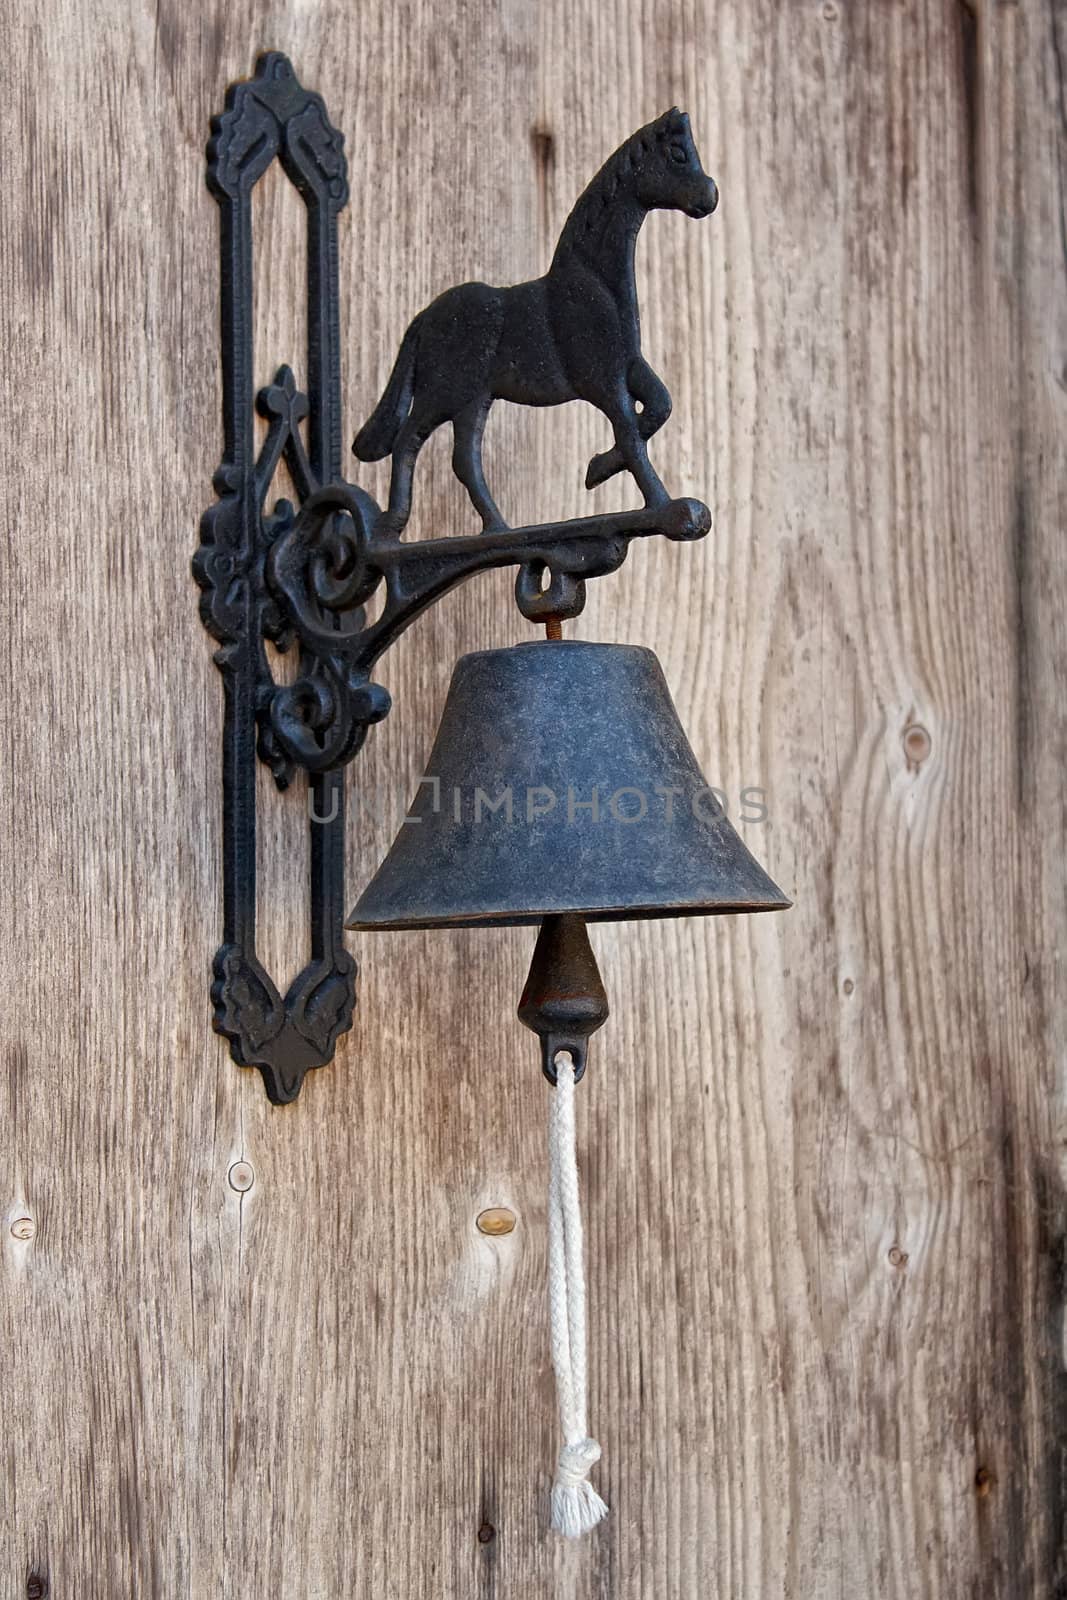 Classic Door Bell by artush